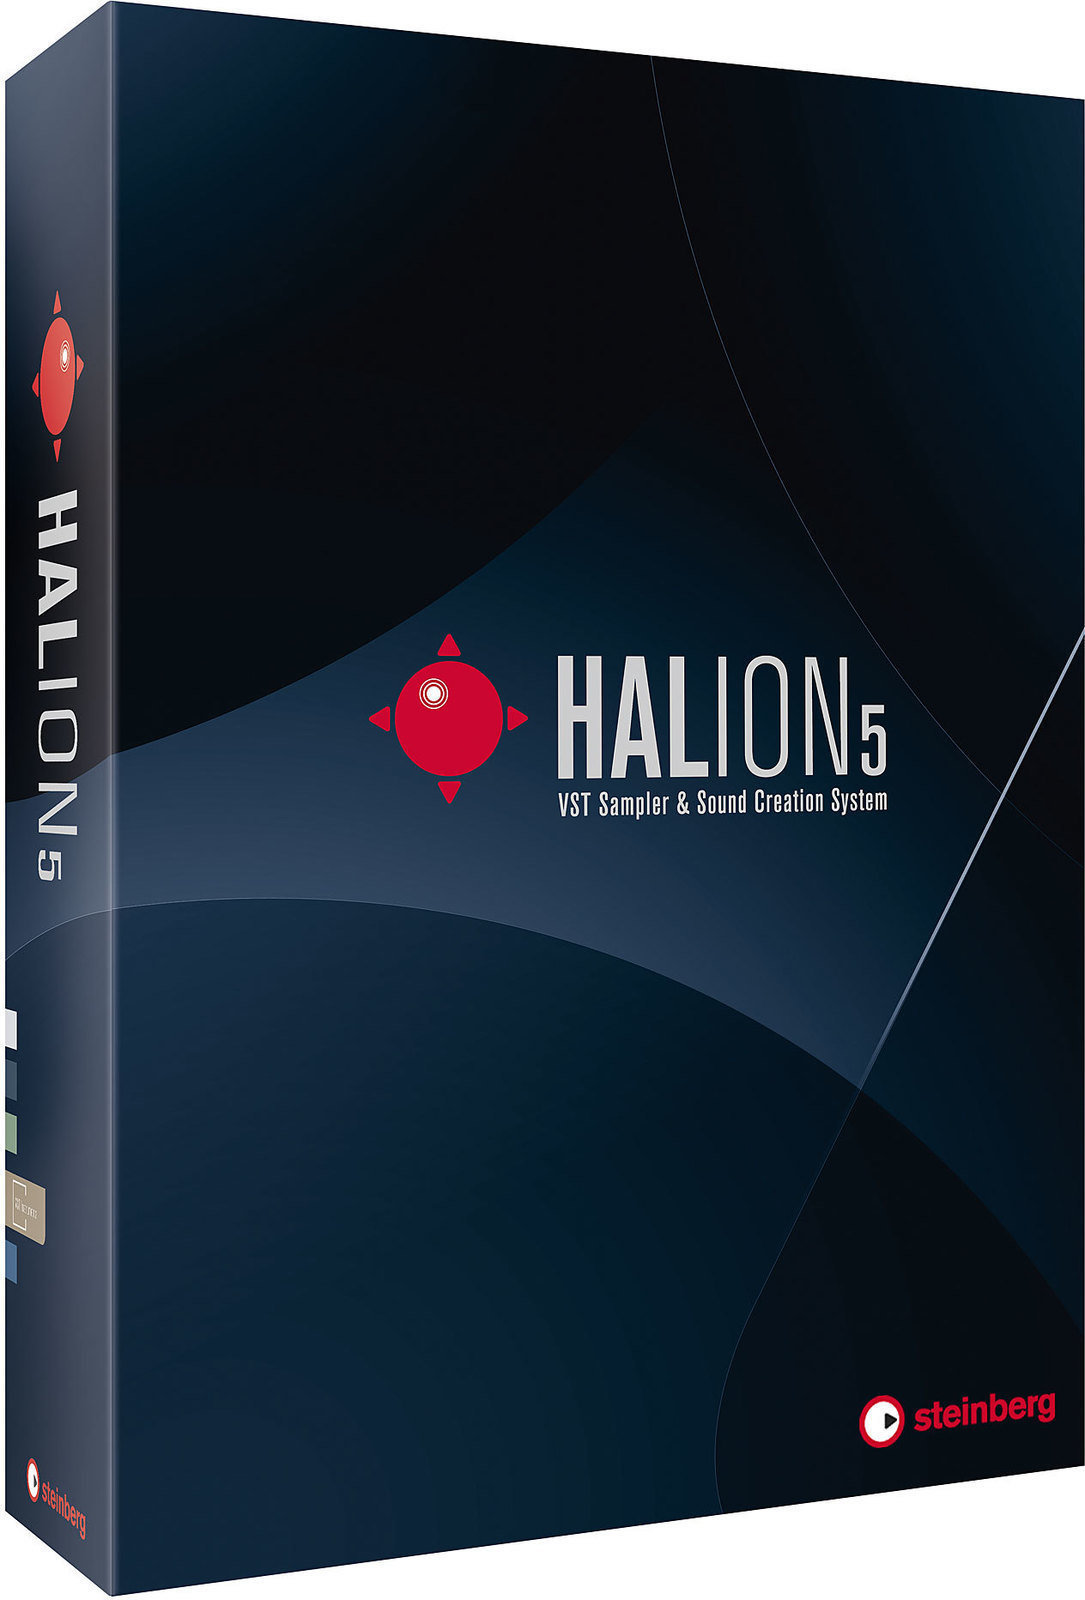 Studio-Software Steinberg Halion 5